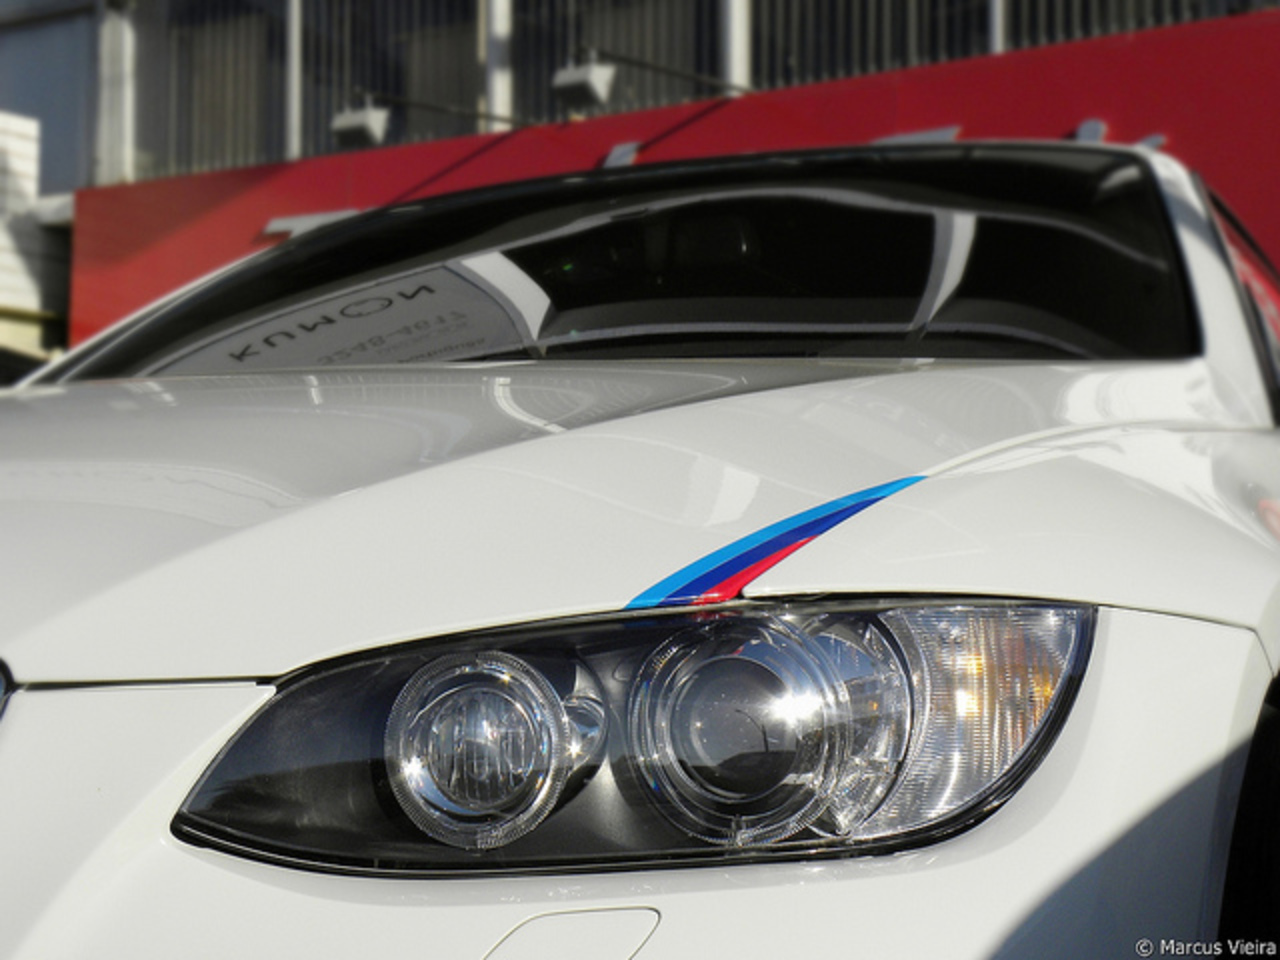 BMW 335i Cabriolet | Flickr - Photo Sharing!